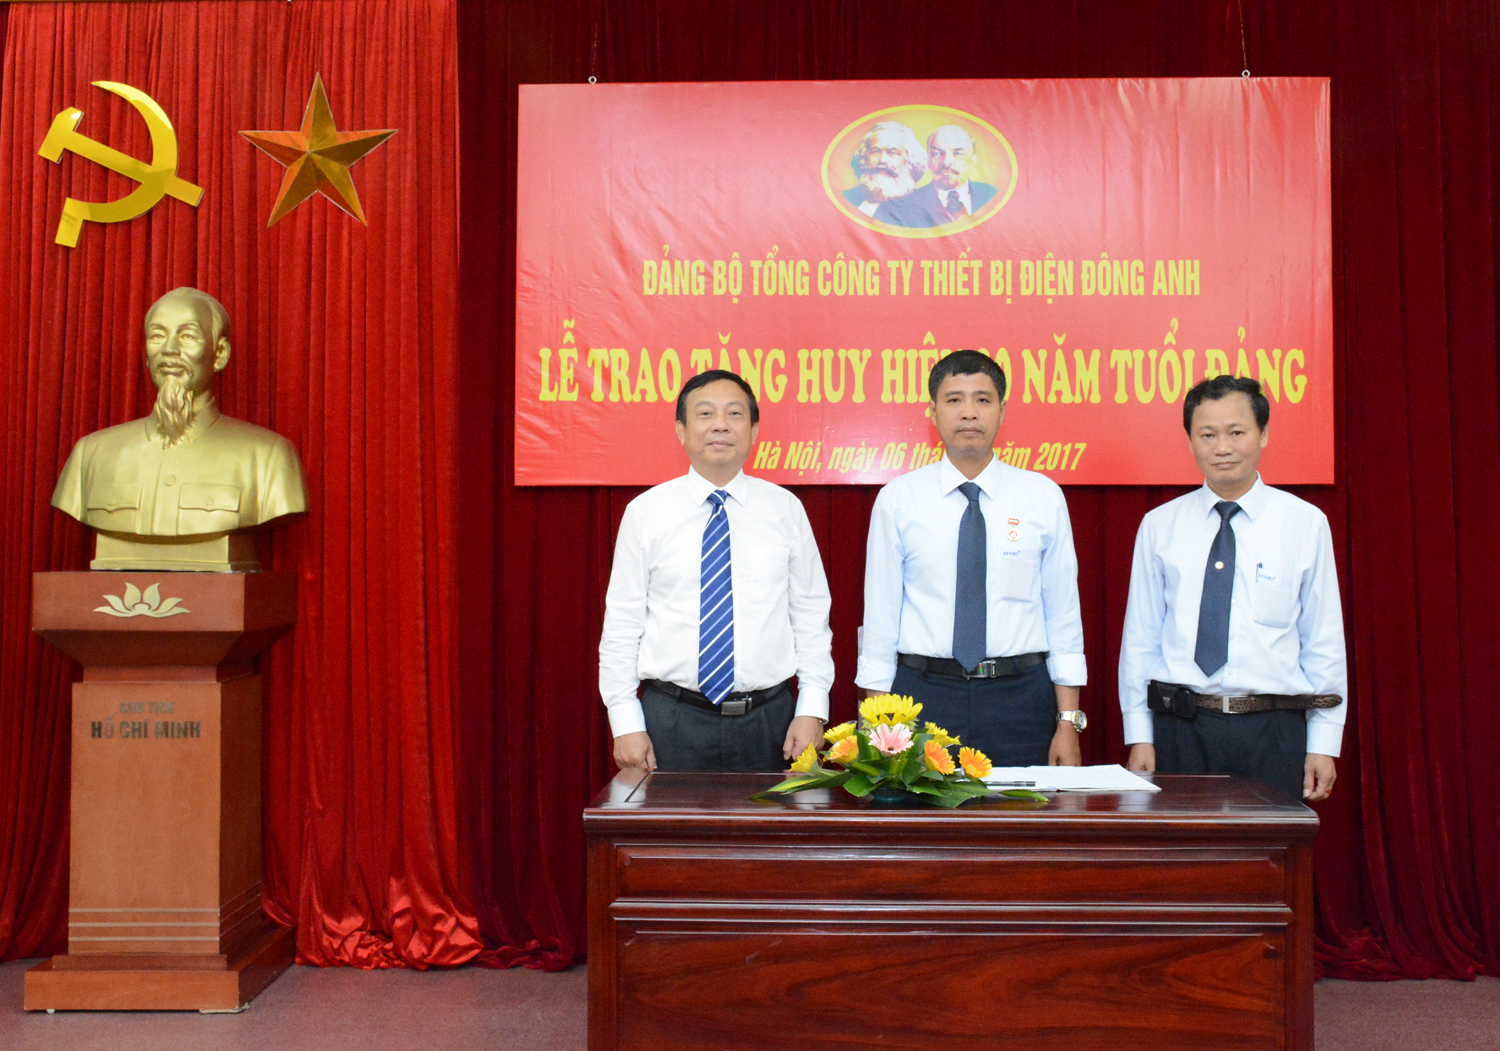 Đồng chí Trịnh Huy Thành - Bí thư Đảng ủy Khối Công nghiệp Hà Nội đến thăm và làm việc với EEMC